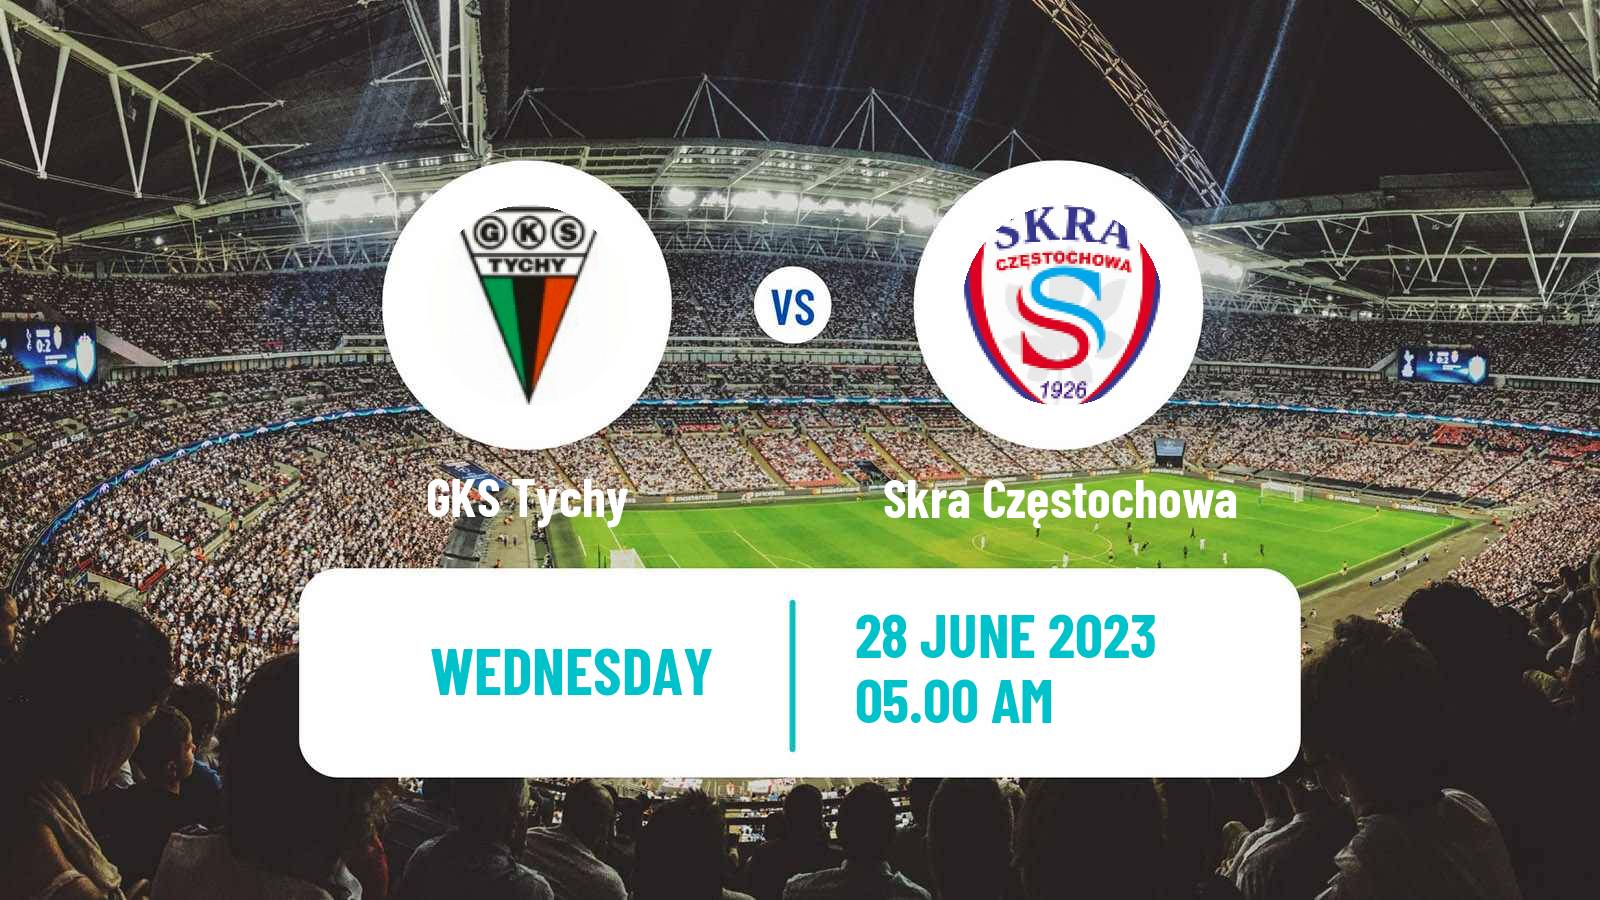 Soccer Club Friendly GKS Tychy - Skra Częstochowa